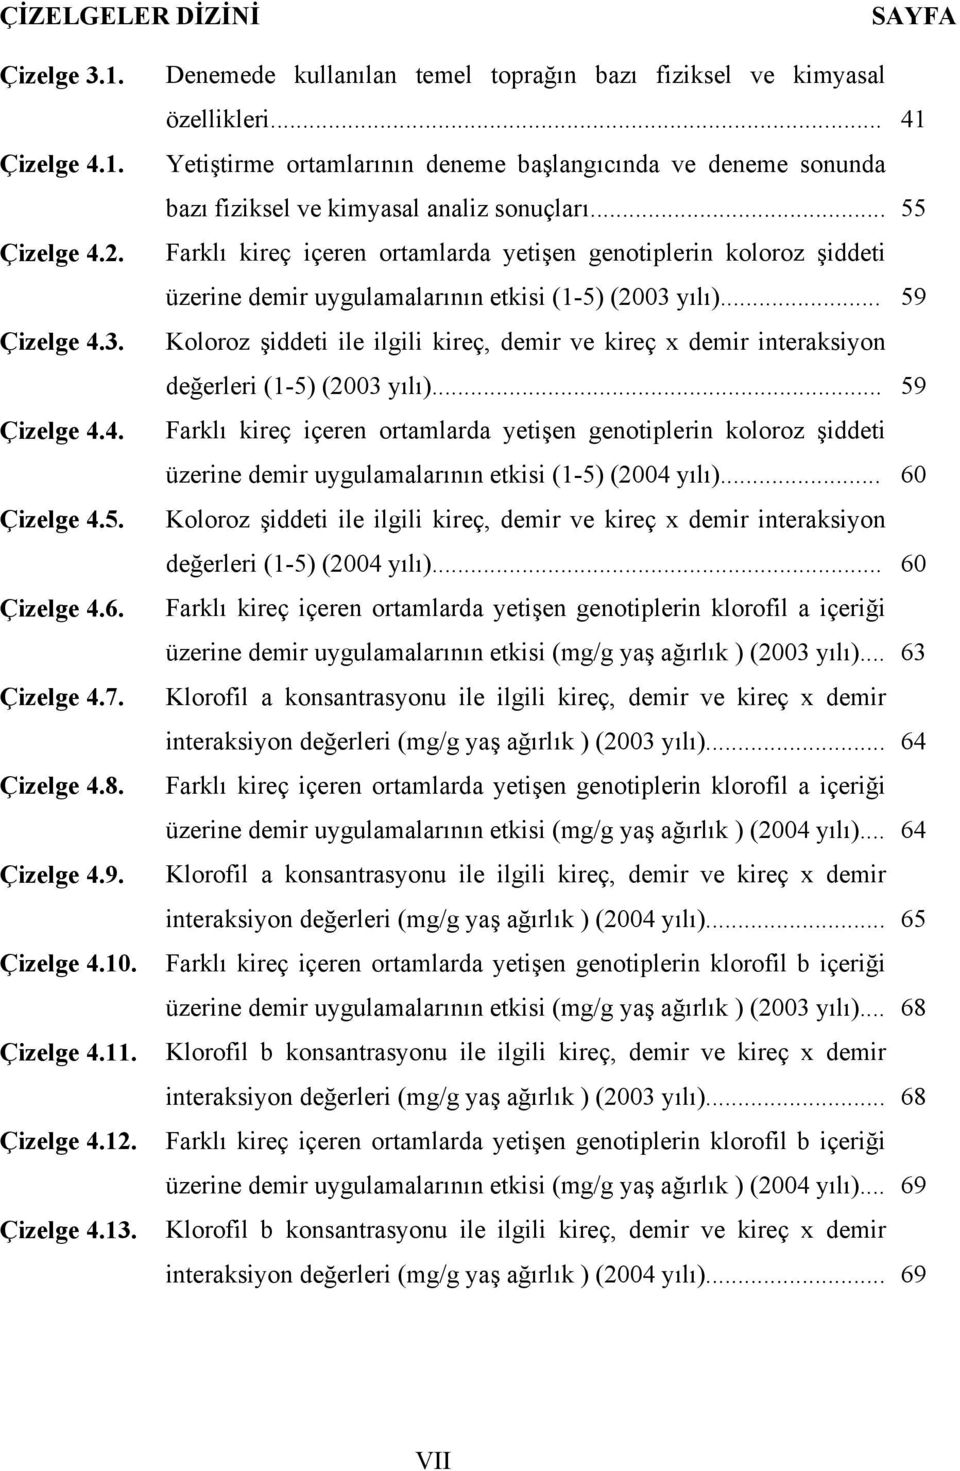 .. 55 Farklı kireç içeren ortamlarda yetişen genotiplerin koloroz şiddeti üzerine demir uygulamalarının etkisi (1-5) (2003 yılı).